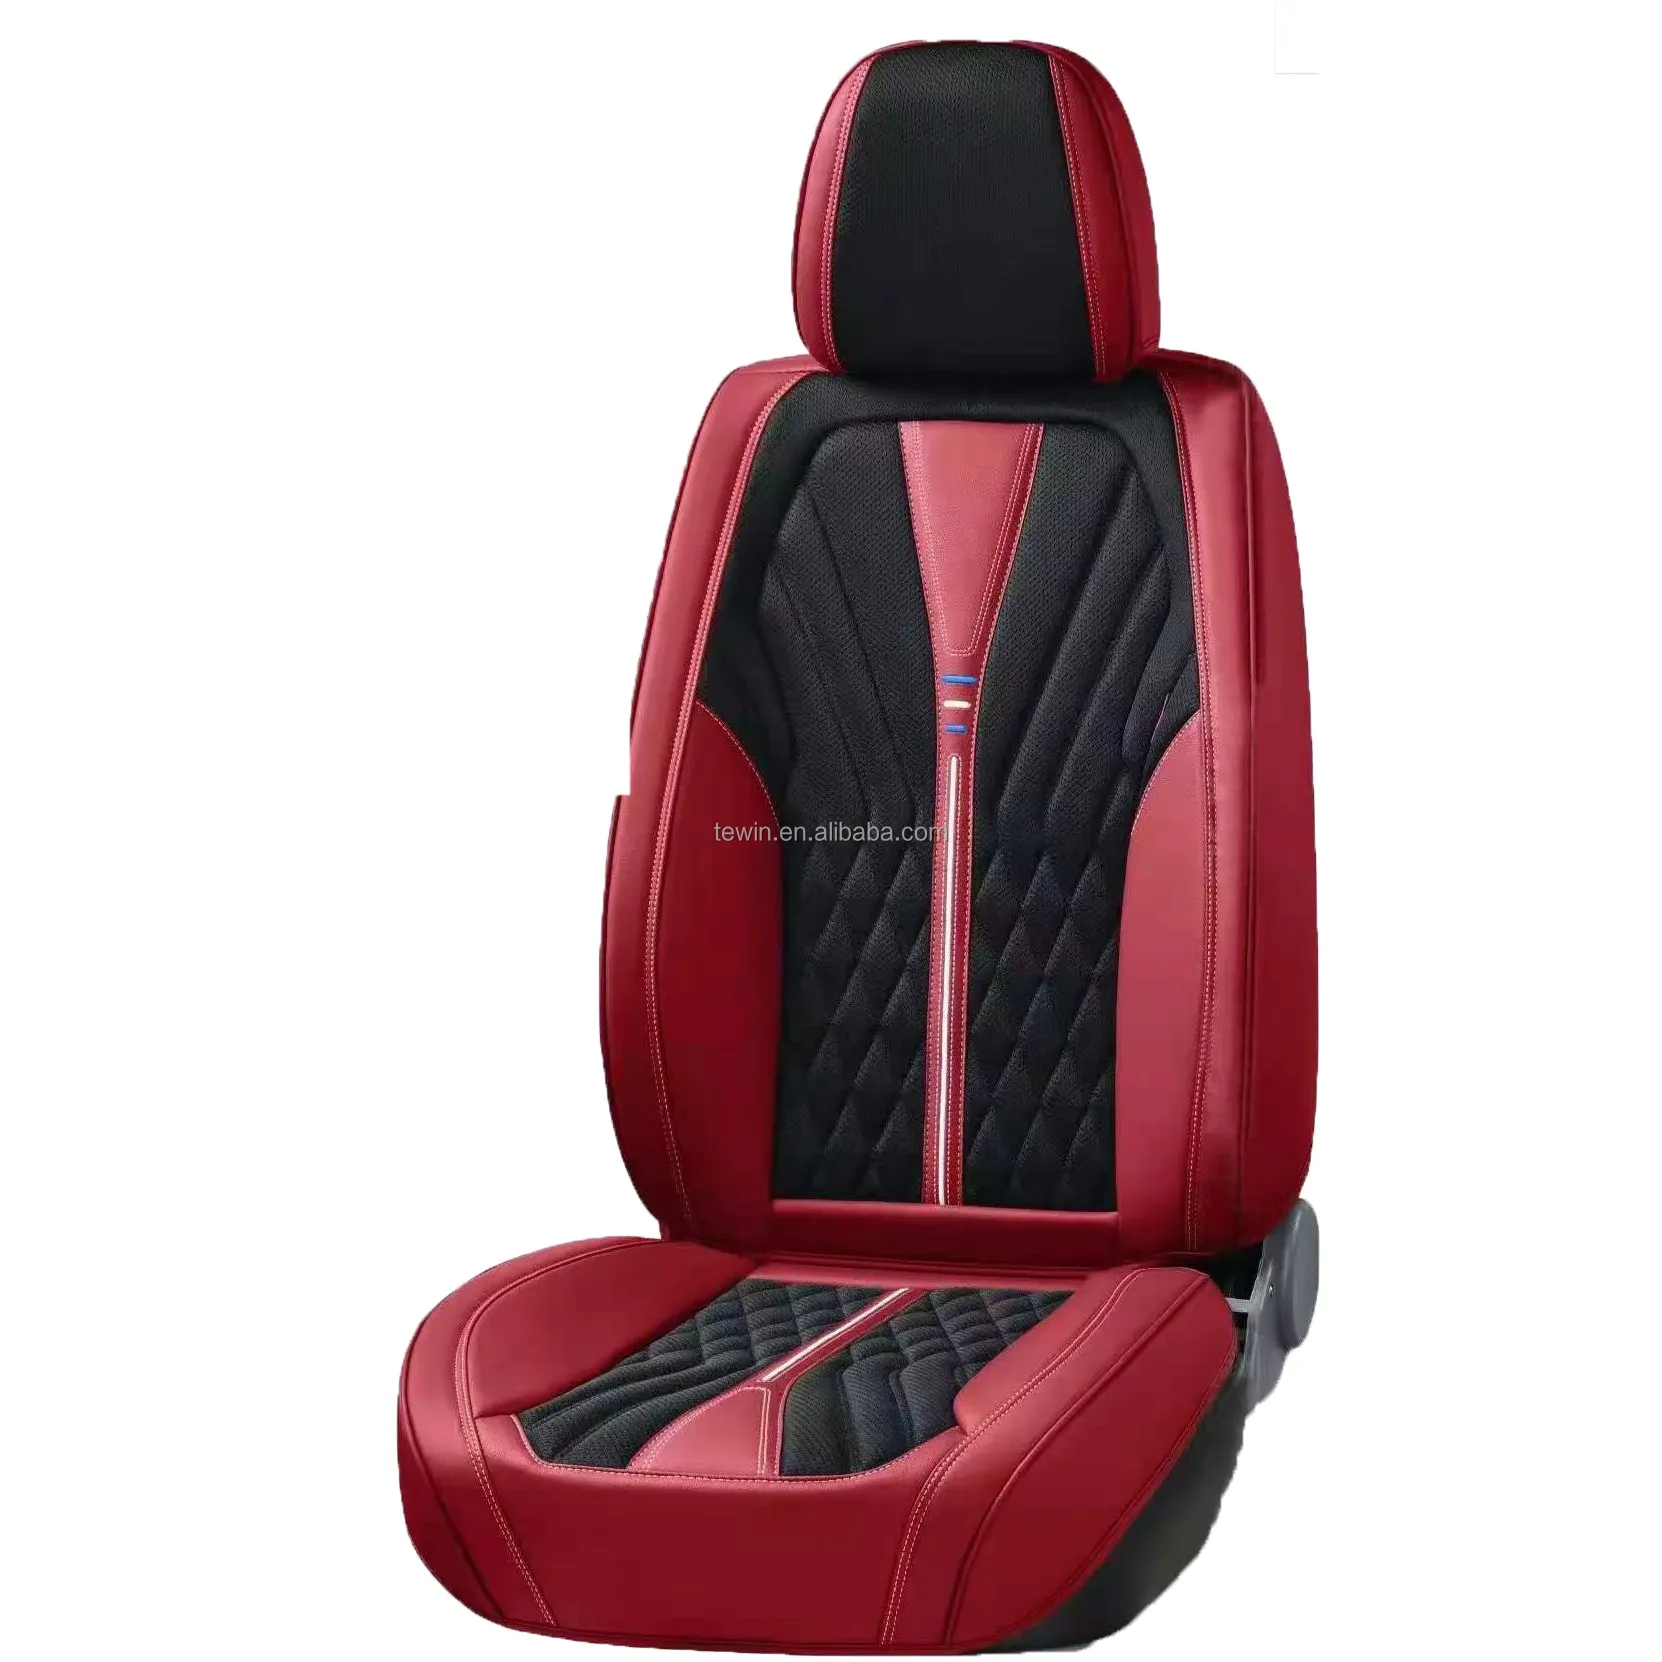 नवीनतम काले चमड़े पूर्ण कवर 9 डी कार सीट कवर, के लिए उपयुक्त सबसे मॉडल, सांस कार सीट कवर